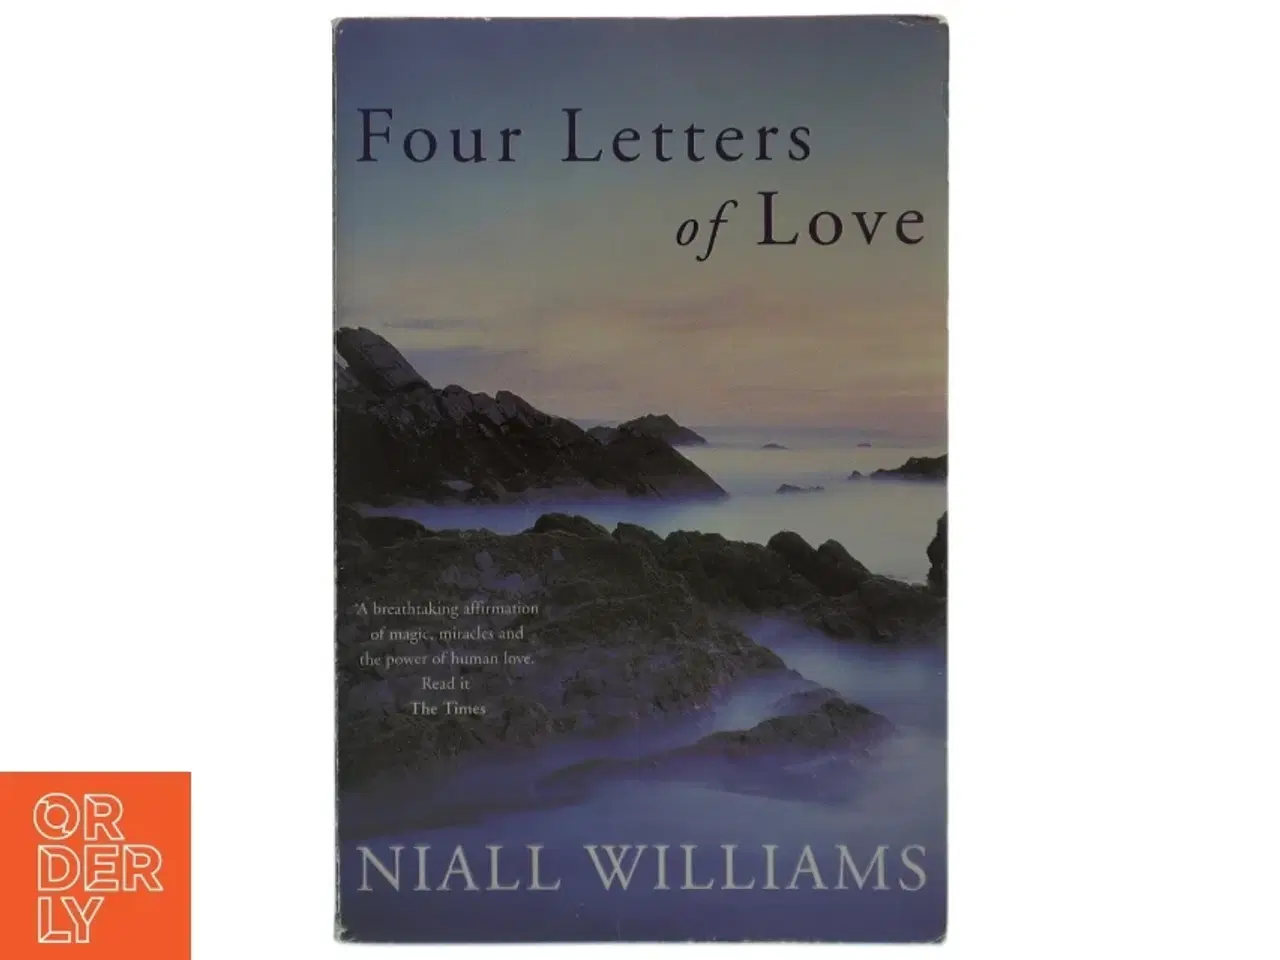 Billede 1 - Four letters of love af Niall Williams (1958-) (Bog)